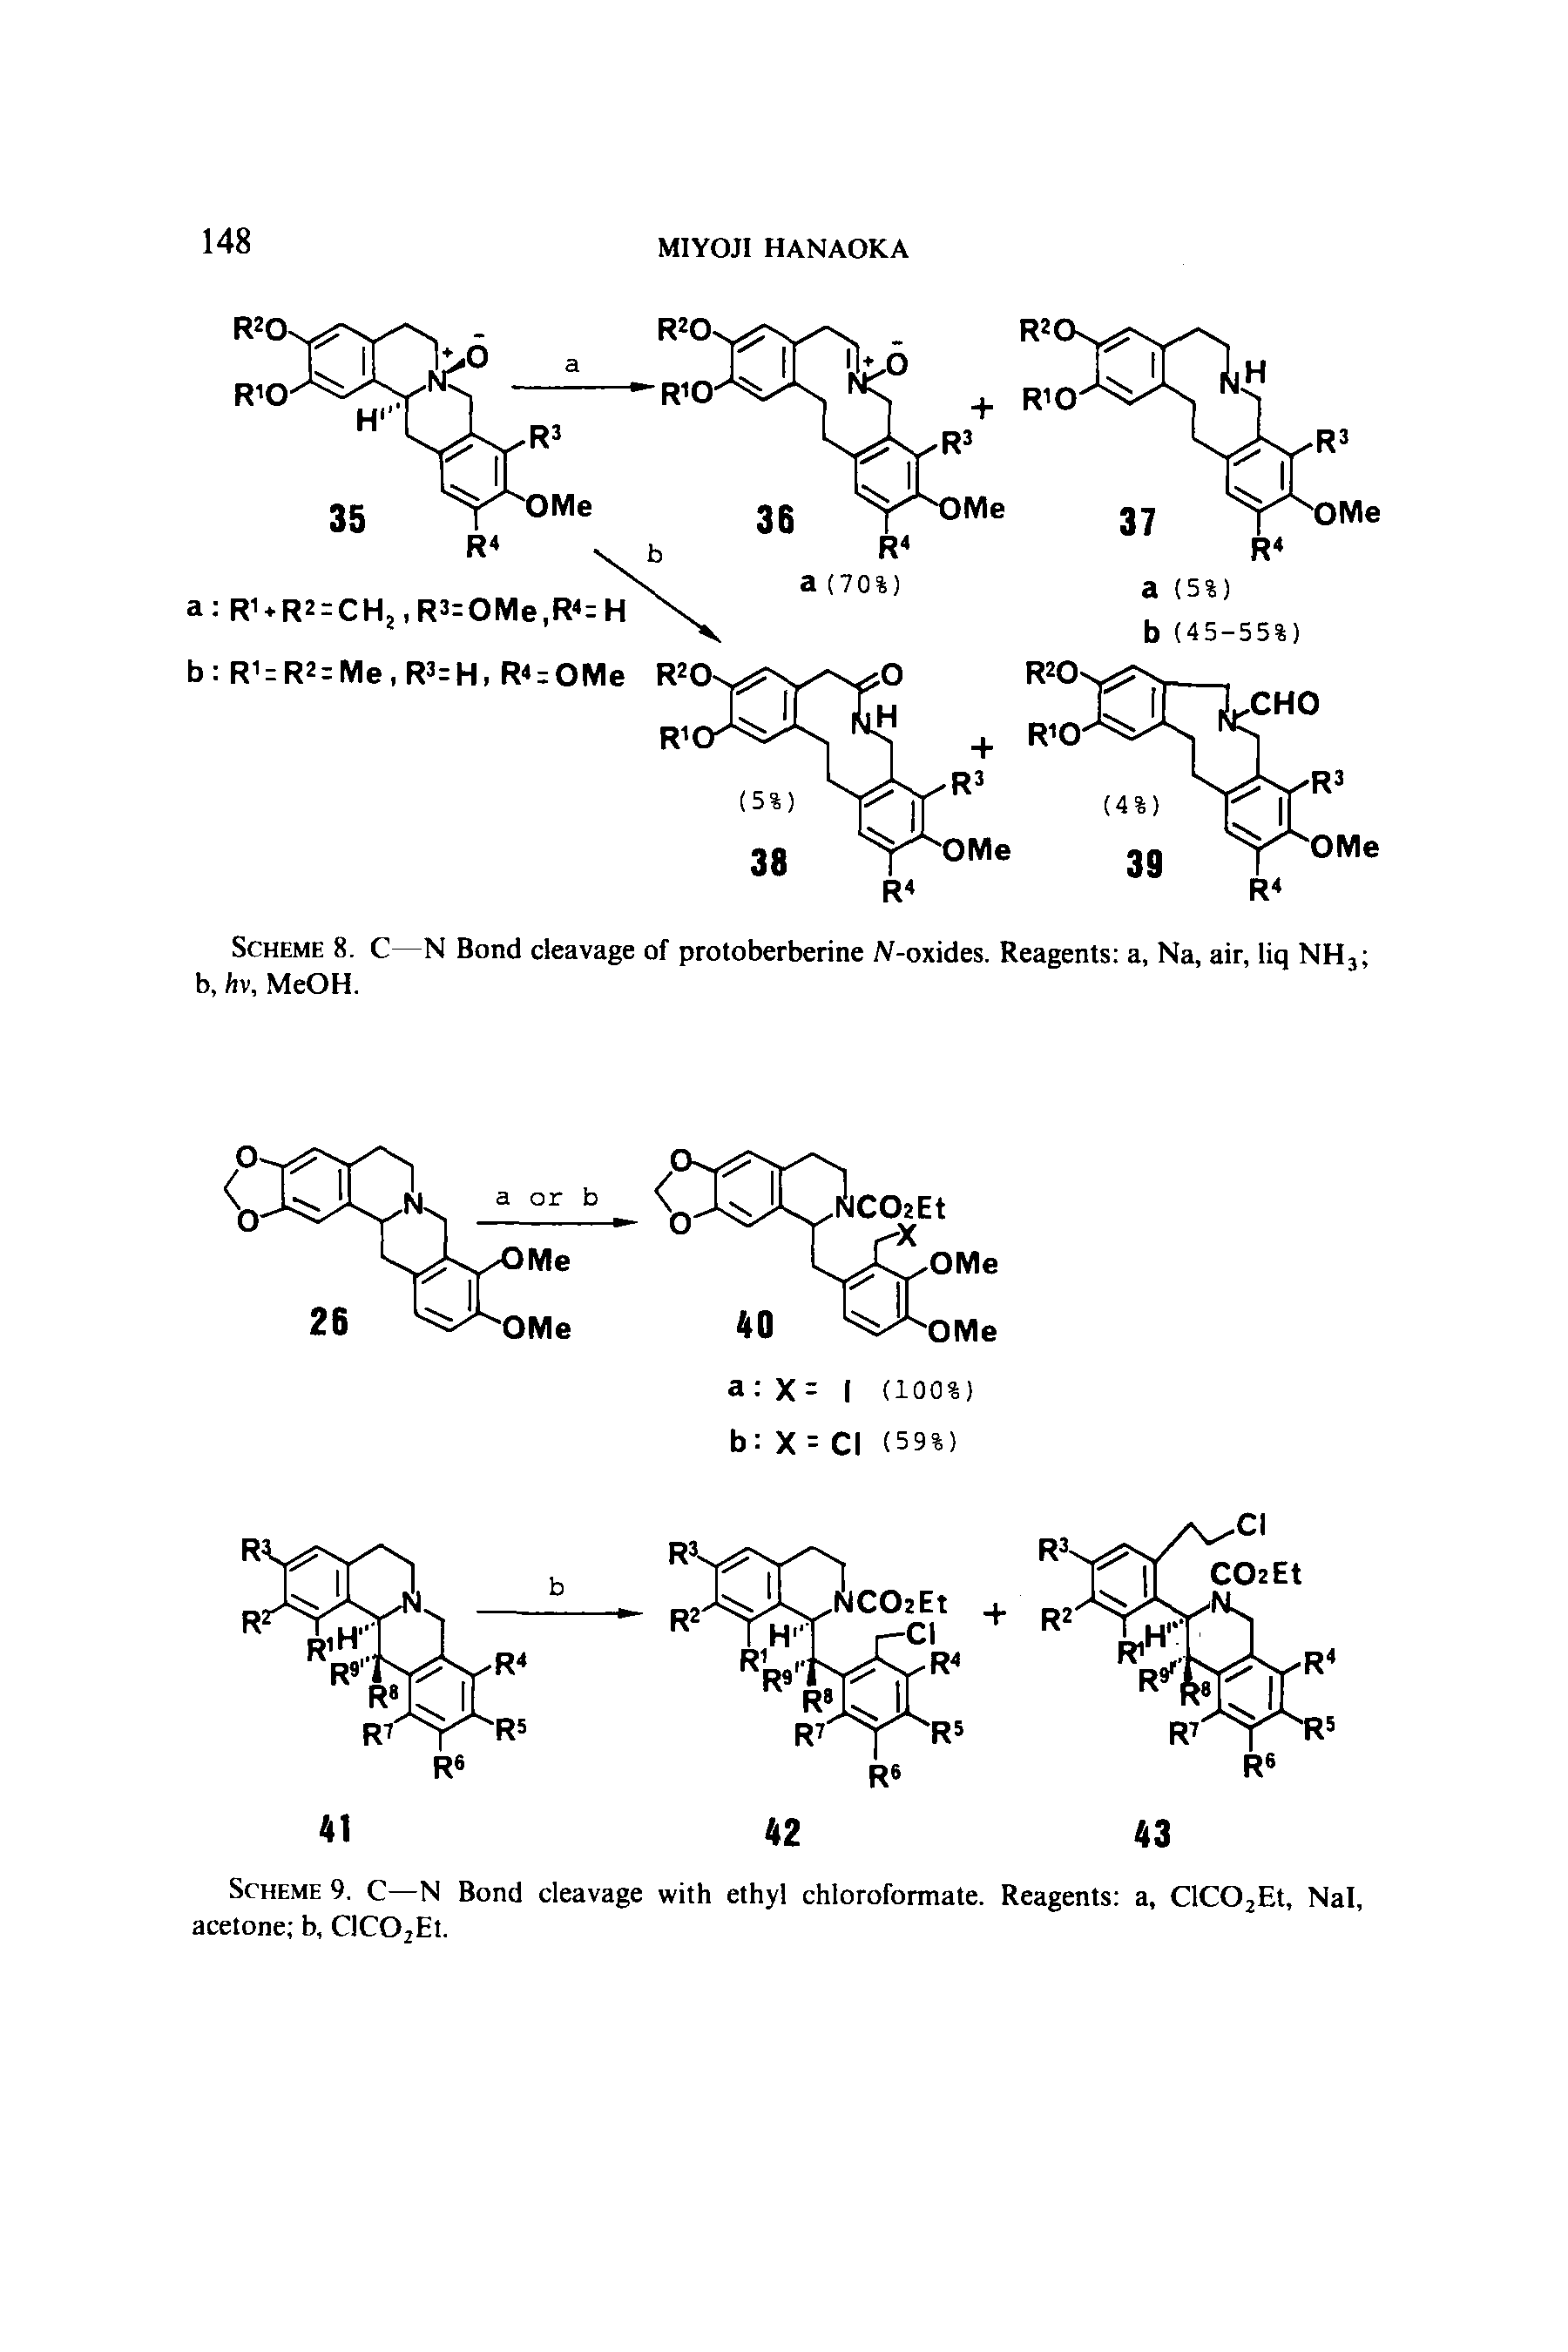 Scheme 9. C—N Bond cleavage with ethyl chloroformate. Reagents a, ClC02Et, Nal, acetone b, ClC02Et.